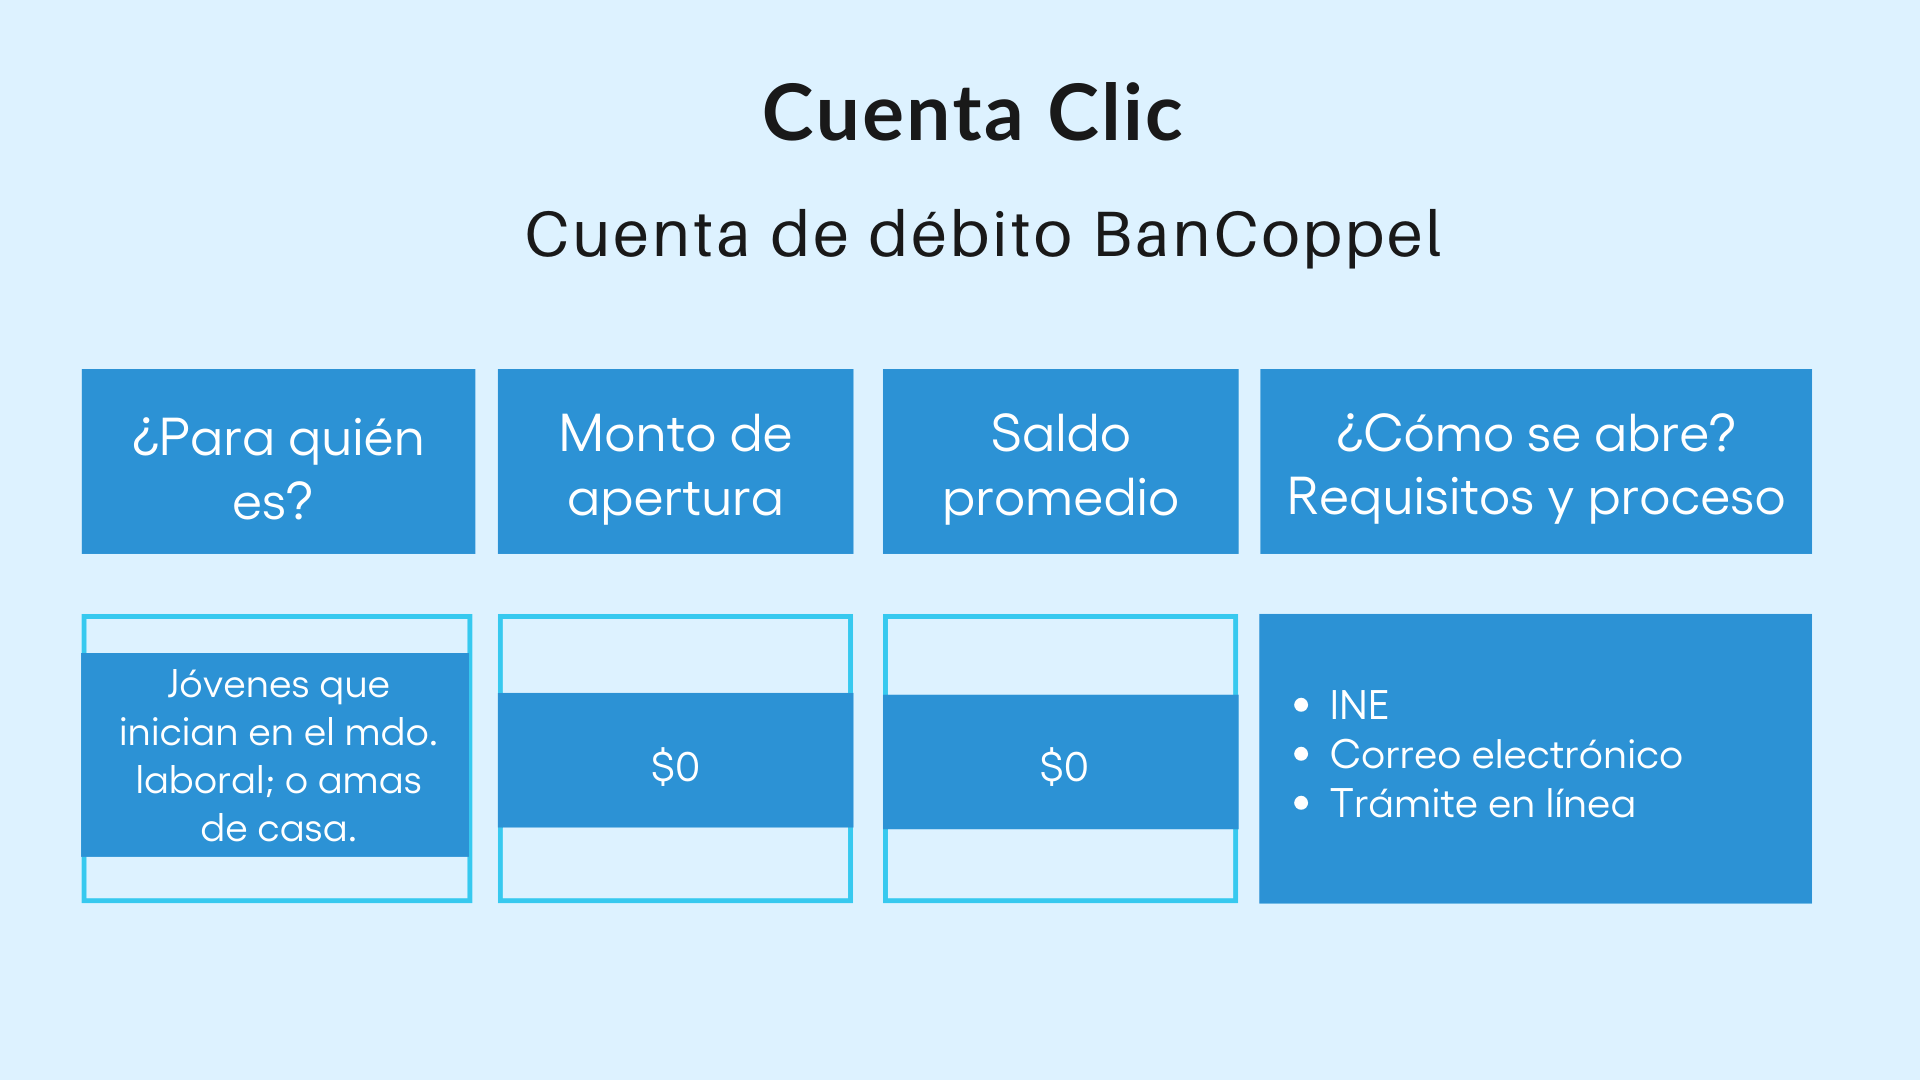 Cuenta Clic BanCoppel